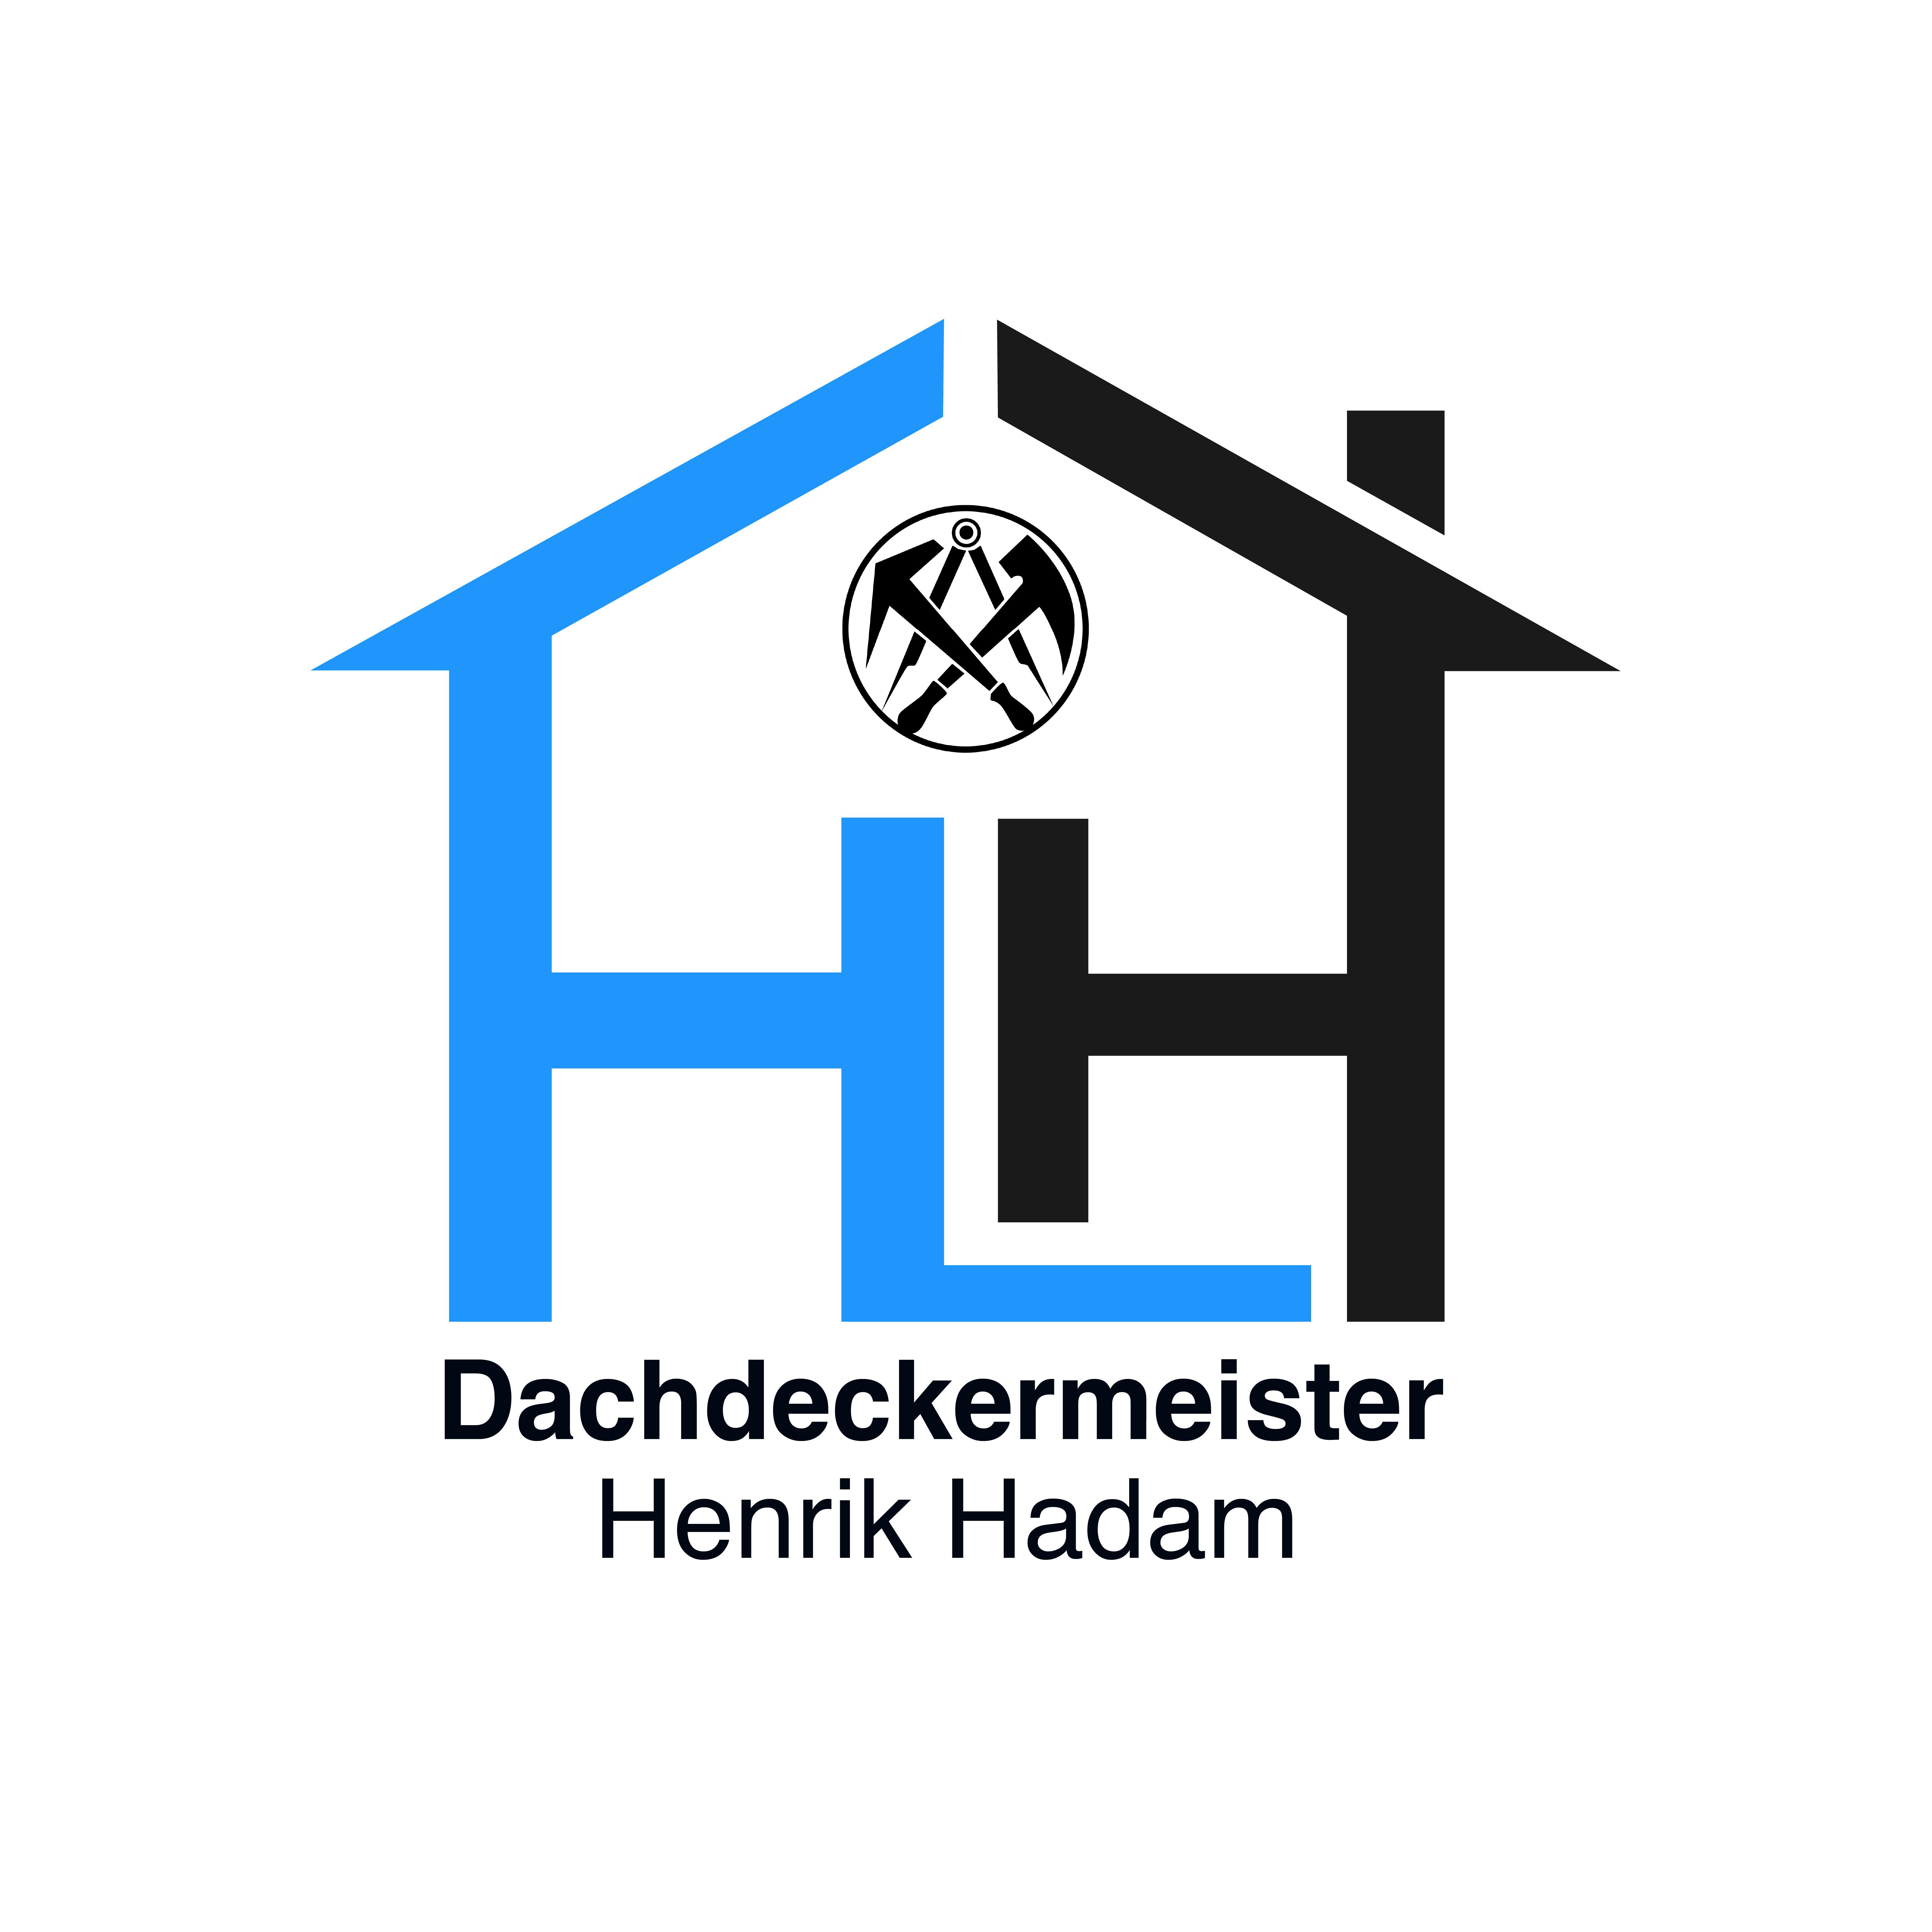 Dachdeckermeister Henrik Hadam in Wolfenbüttel - Logo